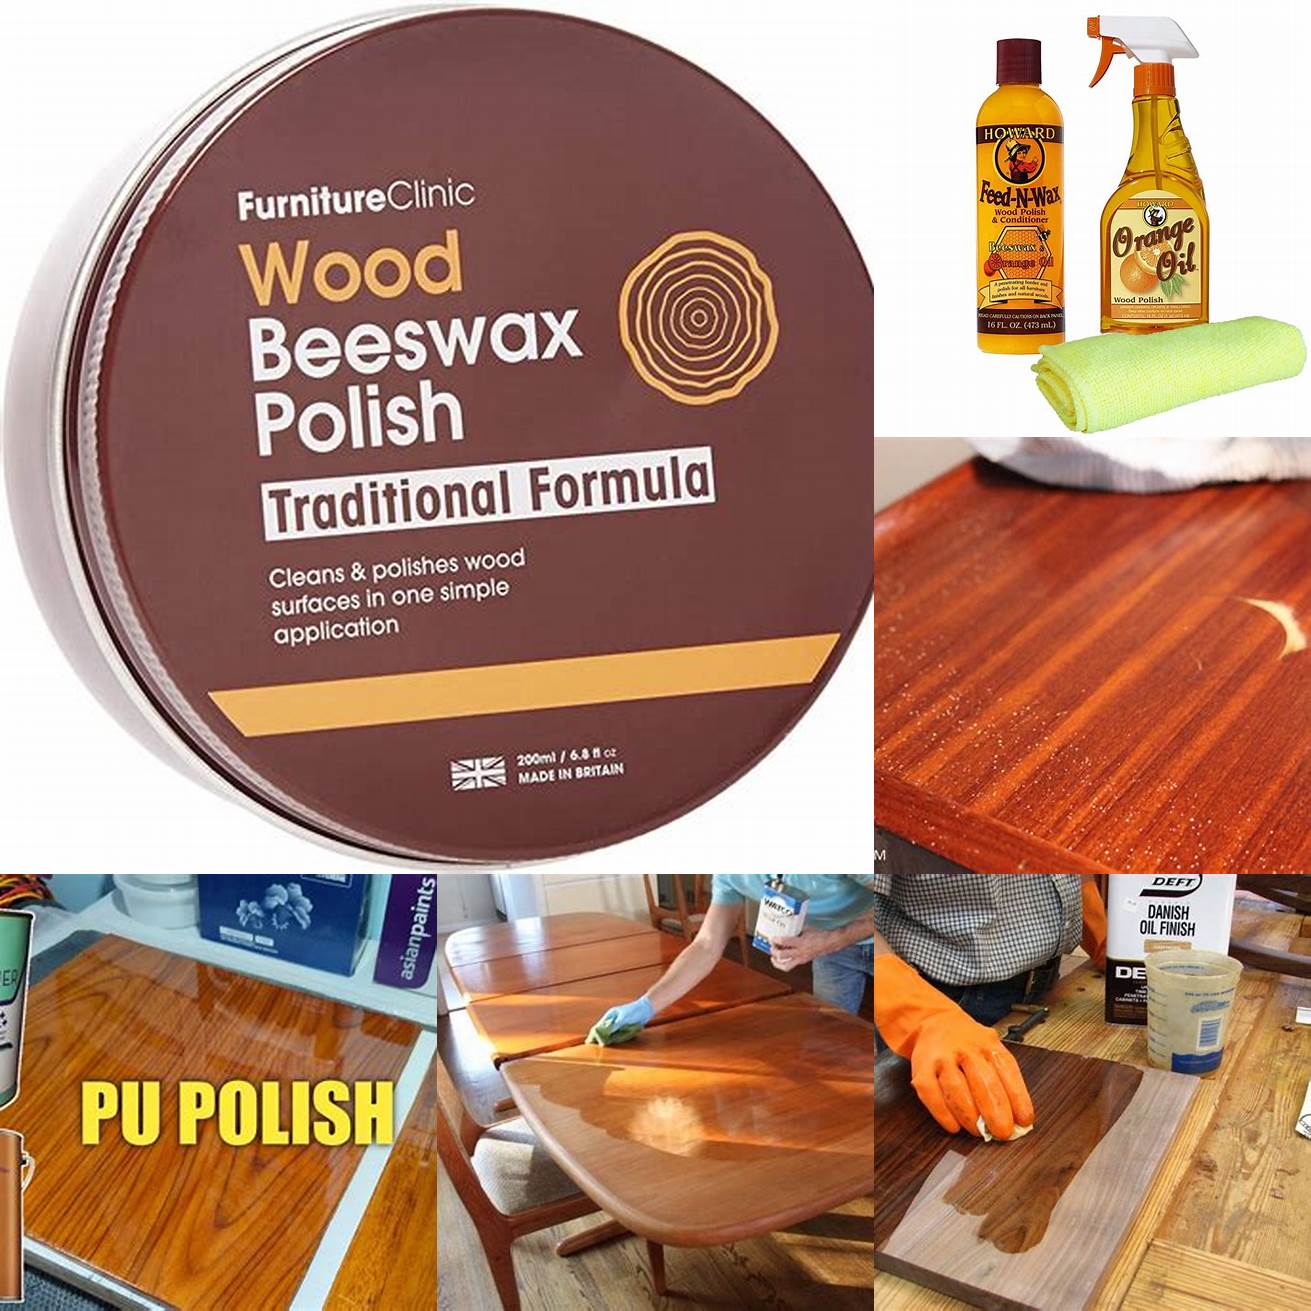 Teak Polish or Wax